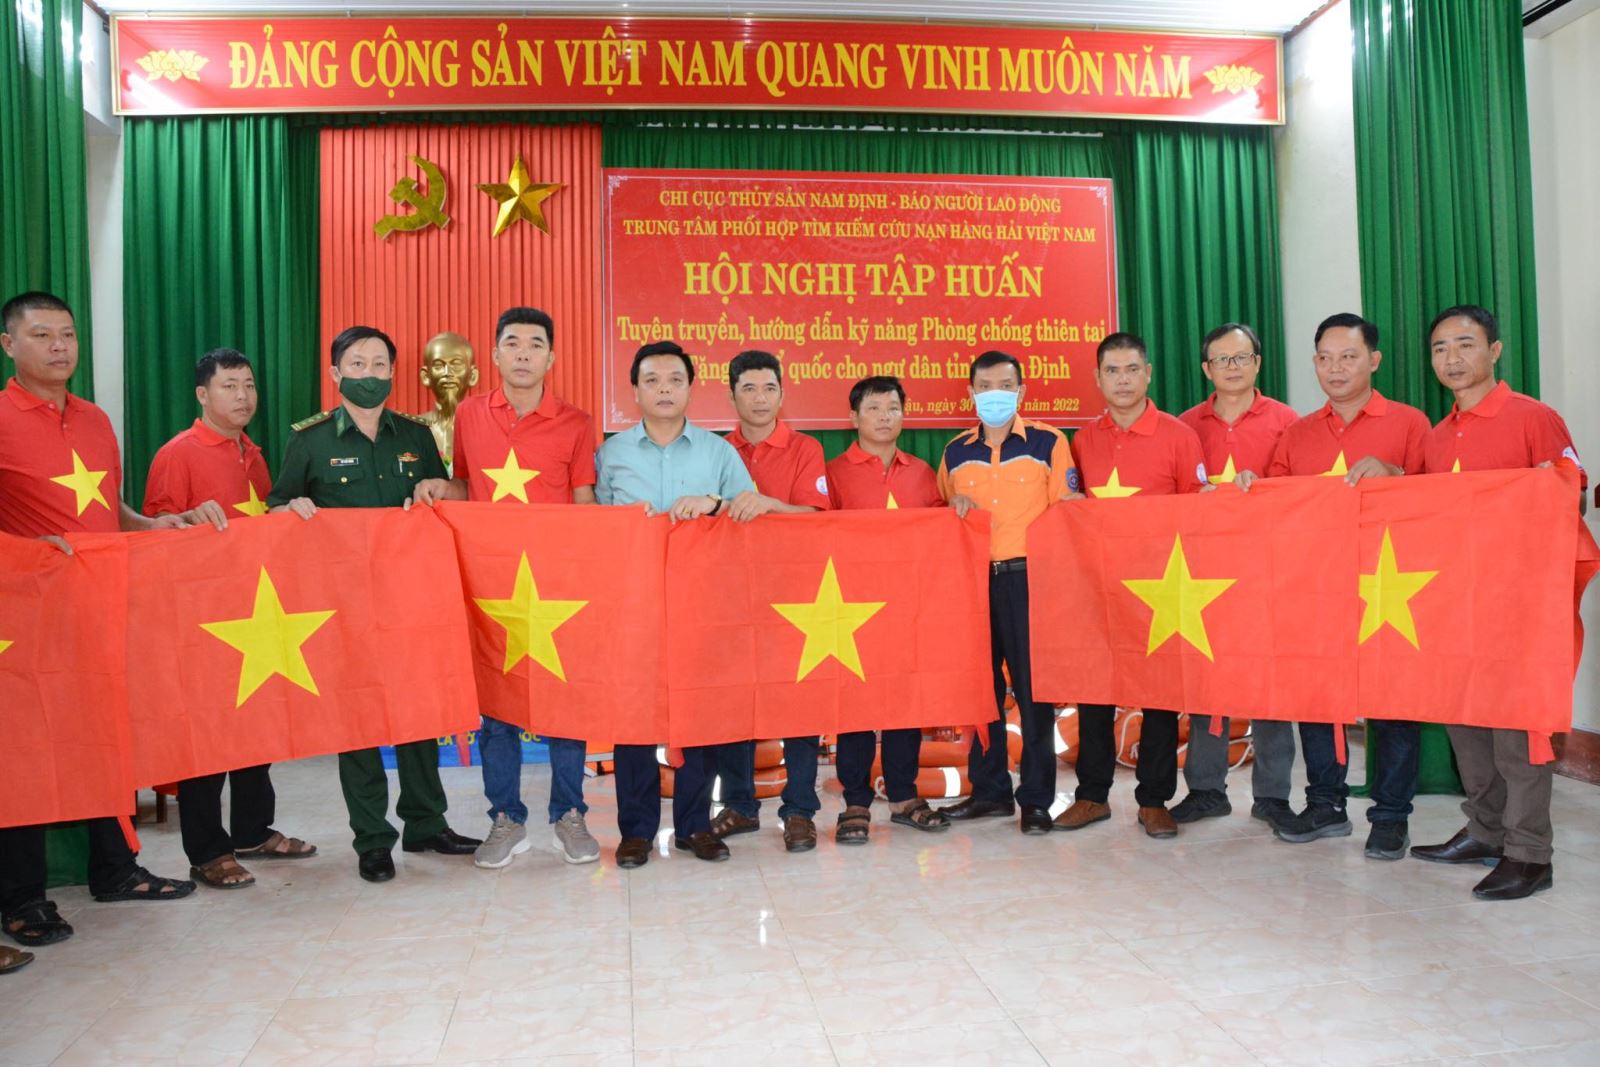 Tổ quốc Việt Nam đang phát triển vượt bậc trên nhiều lĩnh vực, từ kinh tế đến văn hóa. Hãy xem hình ảnh liên quan để cảm nhận sự đổi mới và sự phát triển hiện nay của đất nước ta, và đồng hành cùng chúng ta trong hành trình xây dựng và bảo vệ Tổ Quốc.